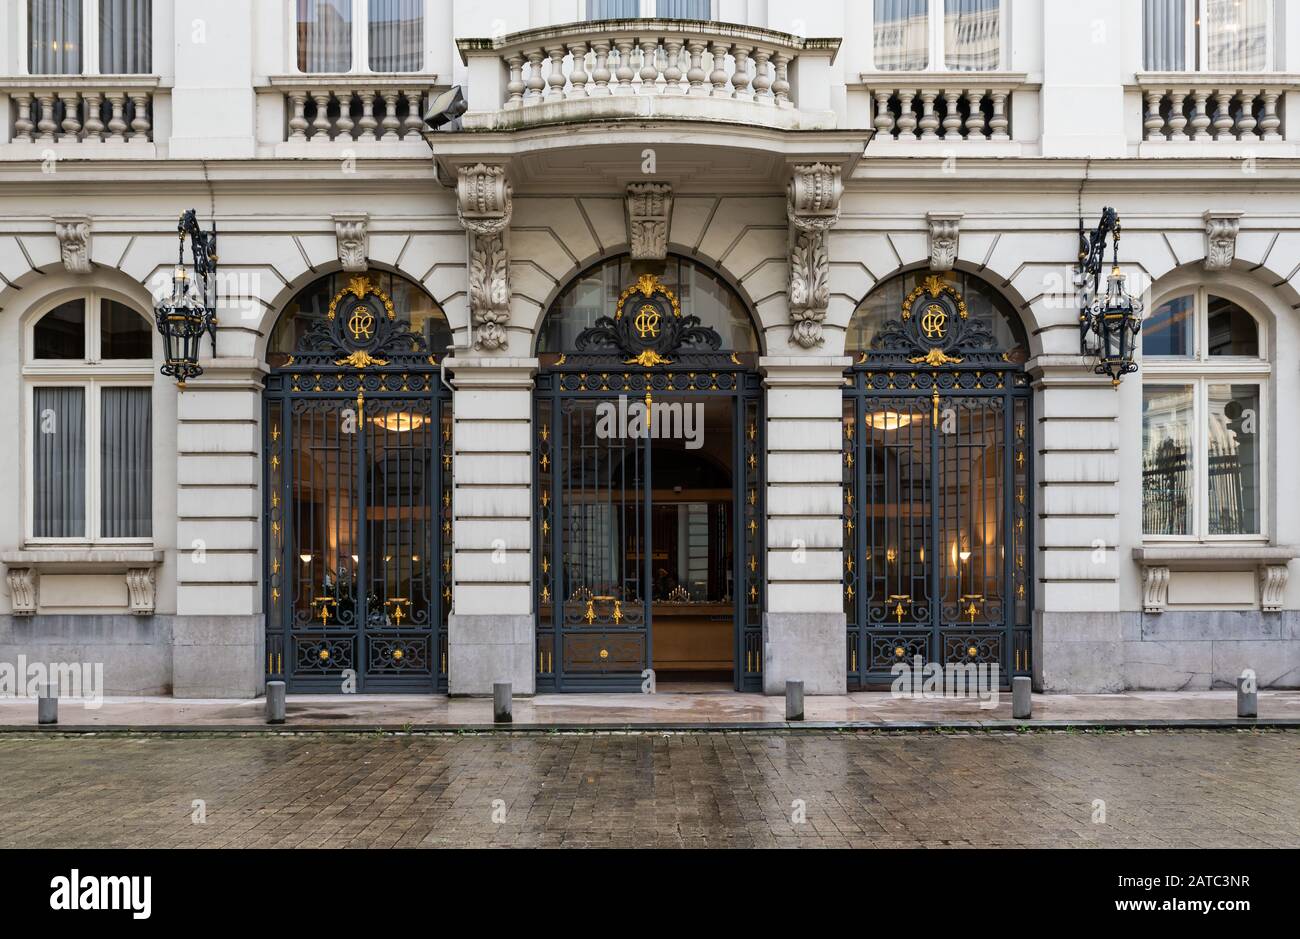 Centro storico di Bruxelles, Regione capitale di Bruxelles / Belgio - 12 20 2019: Ingresso neoclassico e facciata della Corte dei conti del Belgio Foto Stock